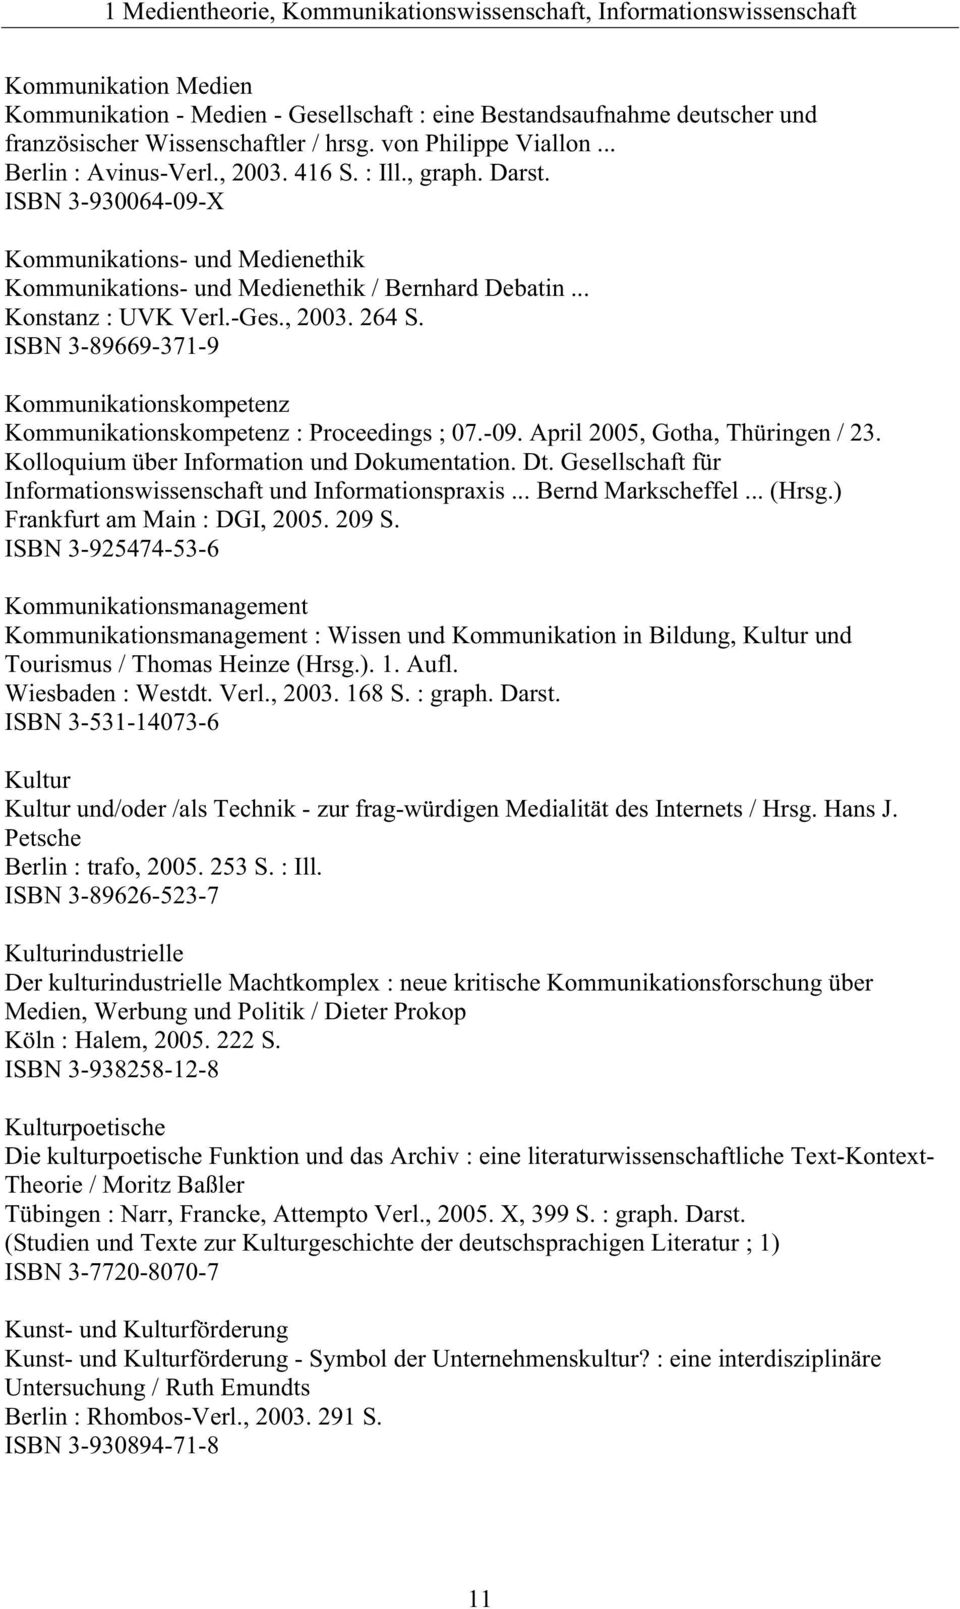 .. Konstanz : UVK Verl.-Ges., 2003. 264 S. ISBN 3-89669-371-9 Kommunikationskompetenz Kommunikationskompetenz : Proceedings ; 07.-09. April 2005, Gotha, Thüringen / 23.